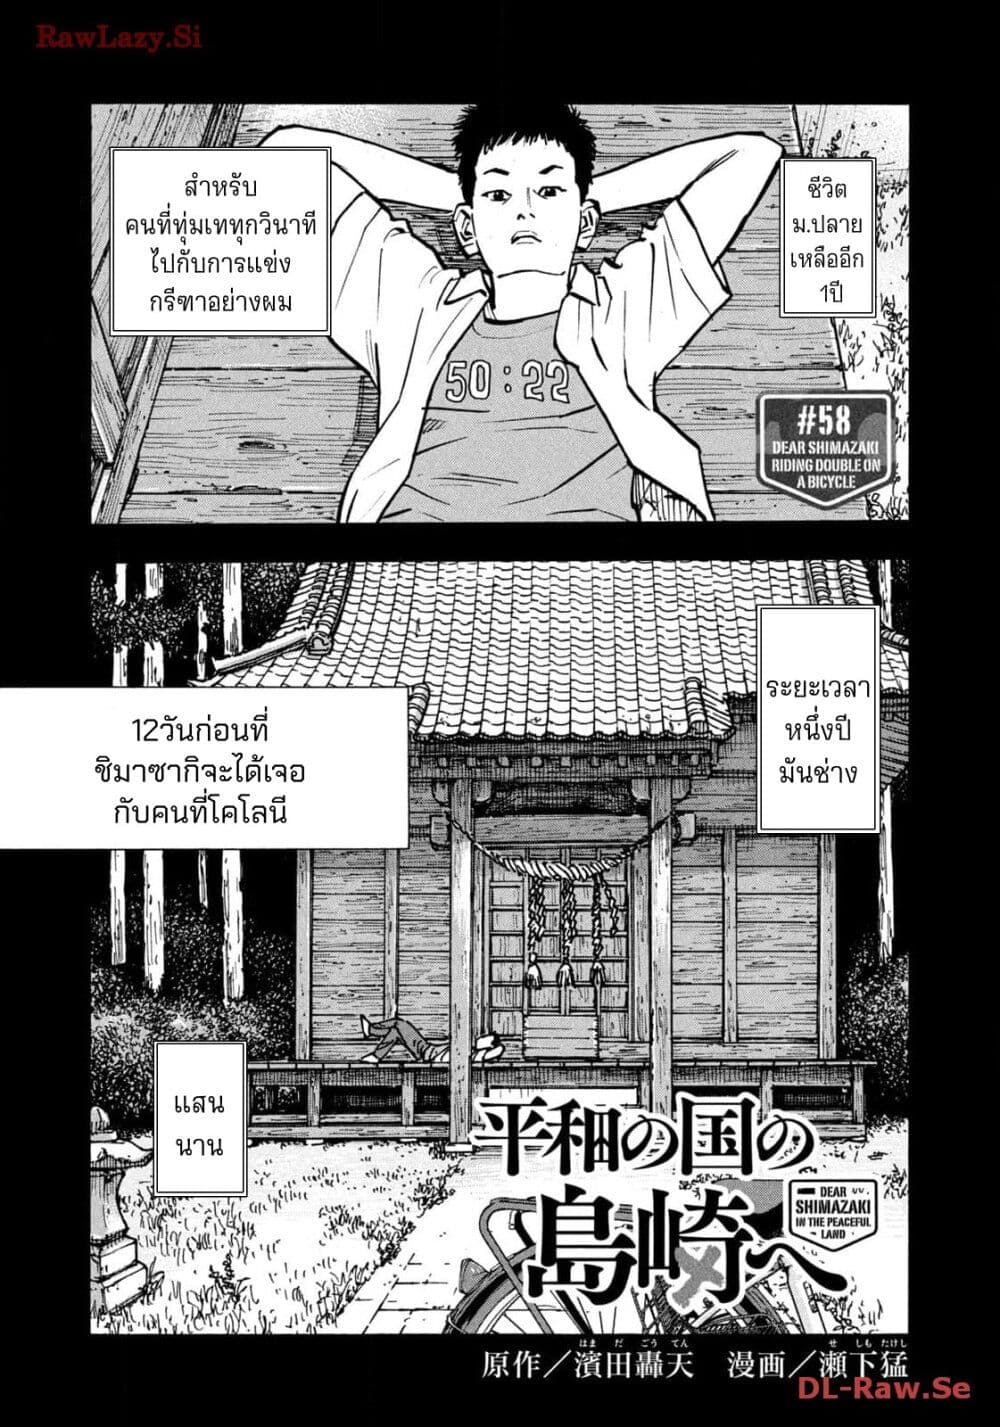 อ่านมังงะ Heiwa no Kuni no Shimazaki e ตอนที่ 58/0.jpg